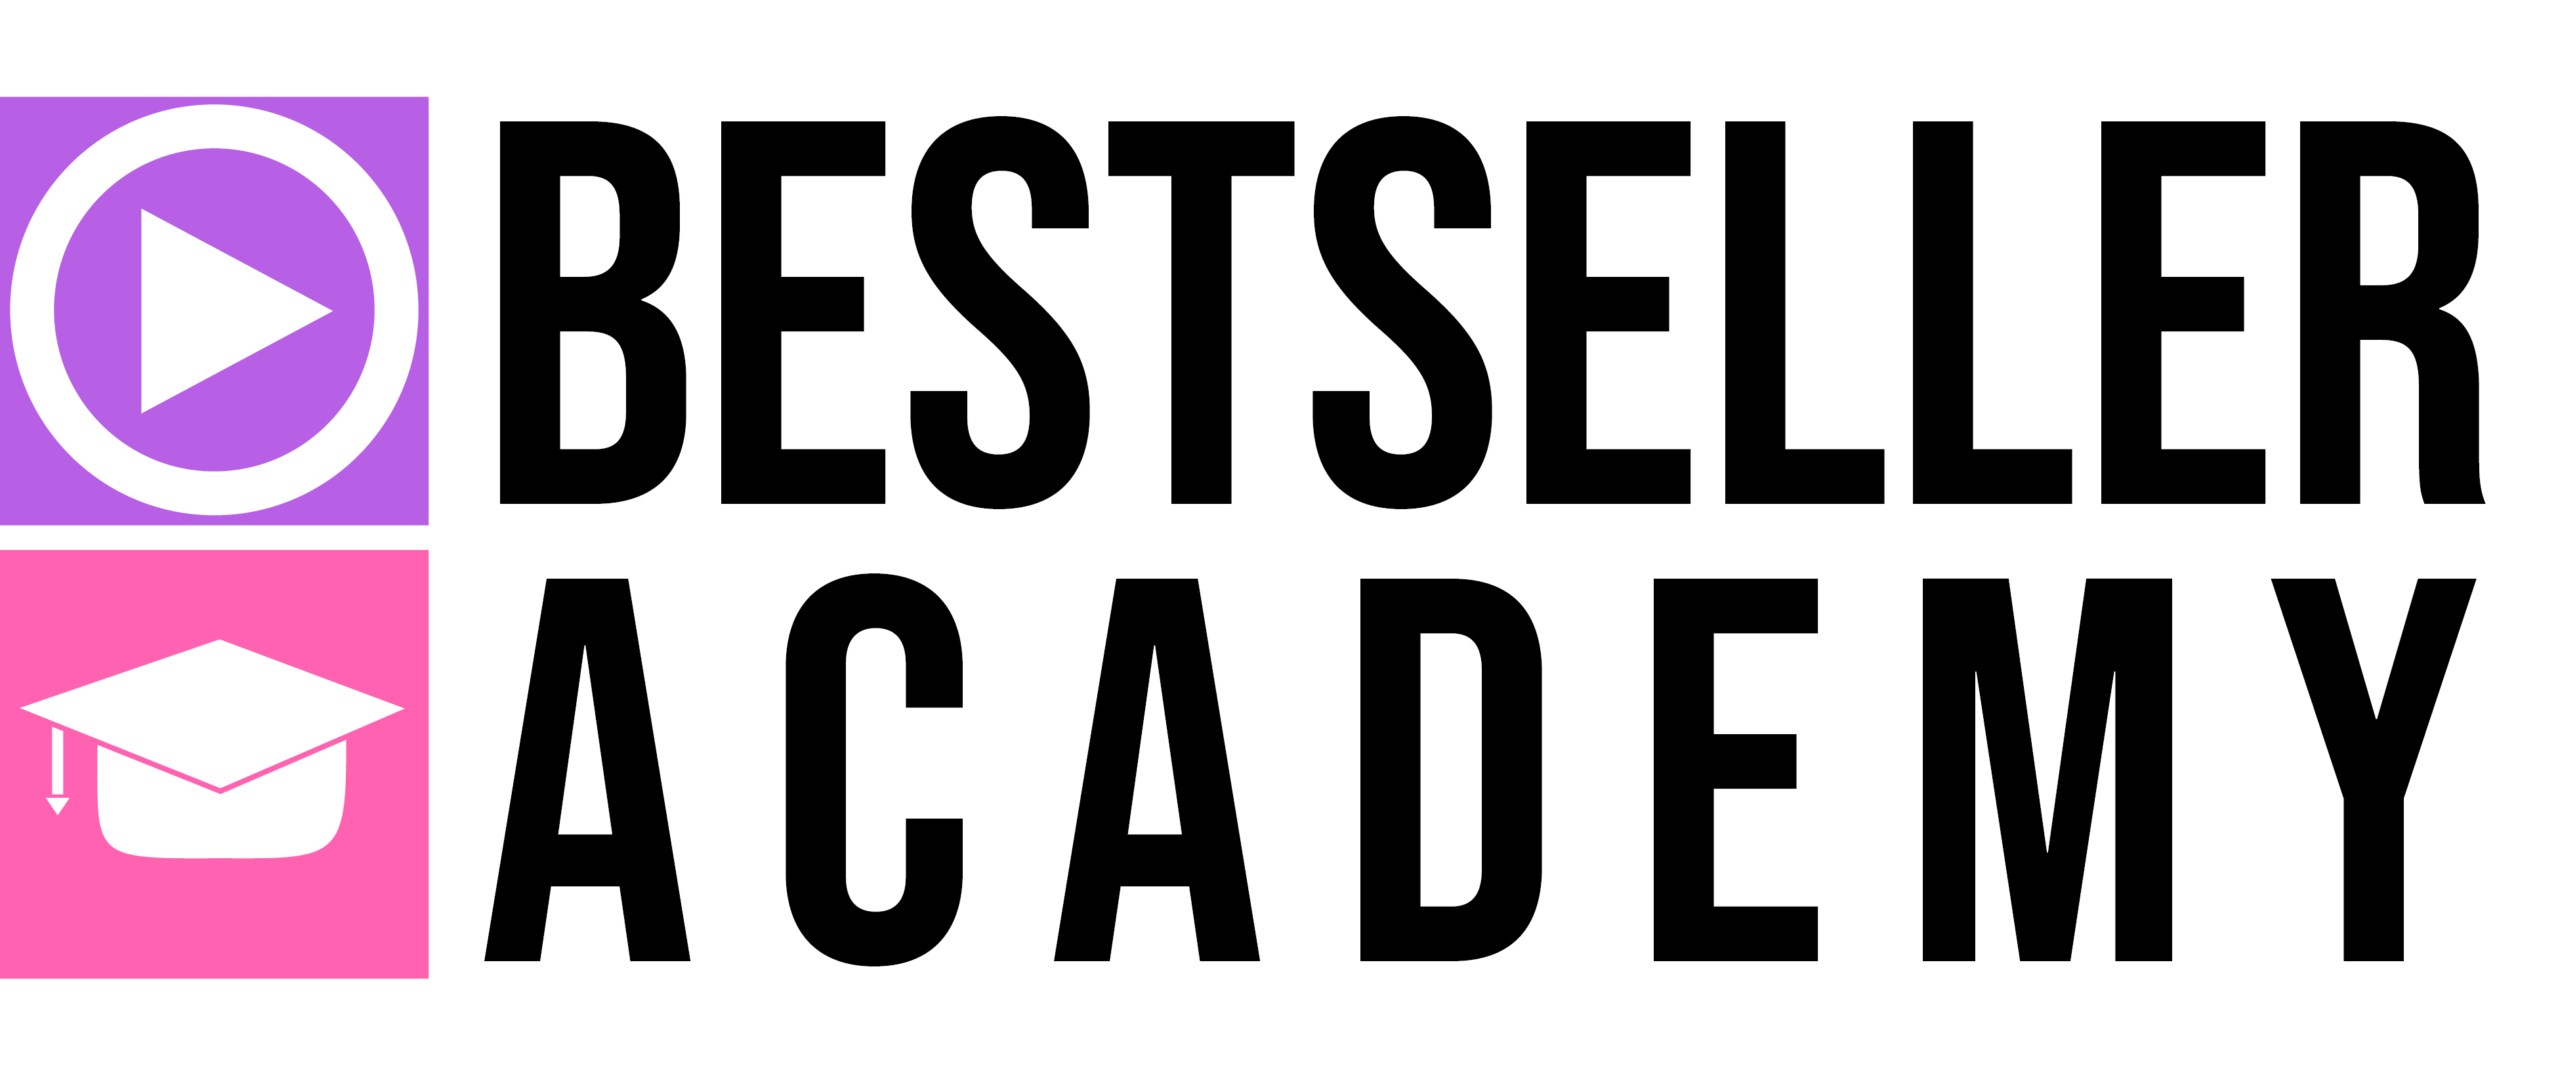 academy logo scaled